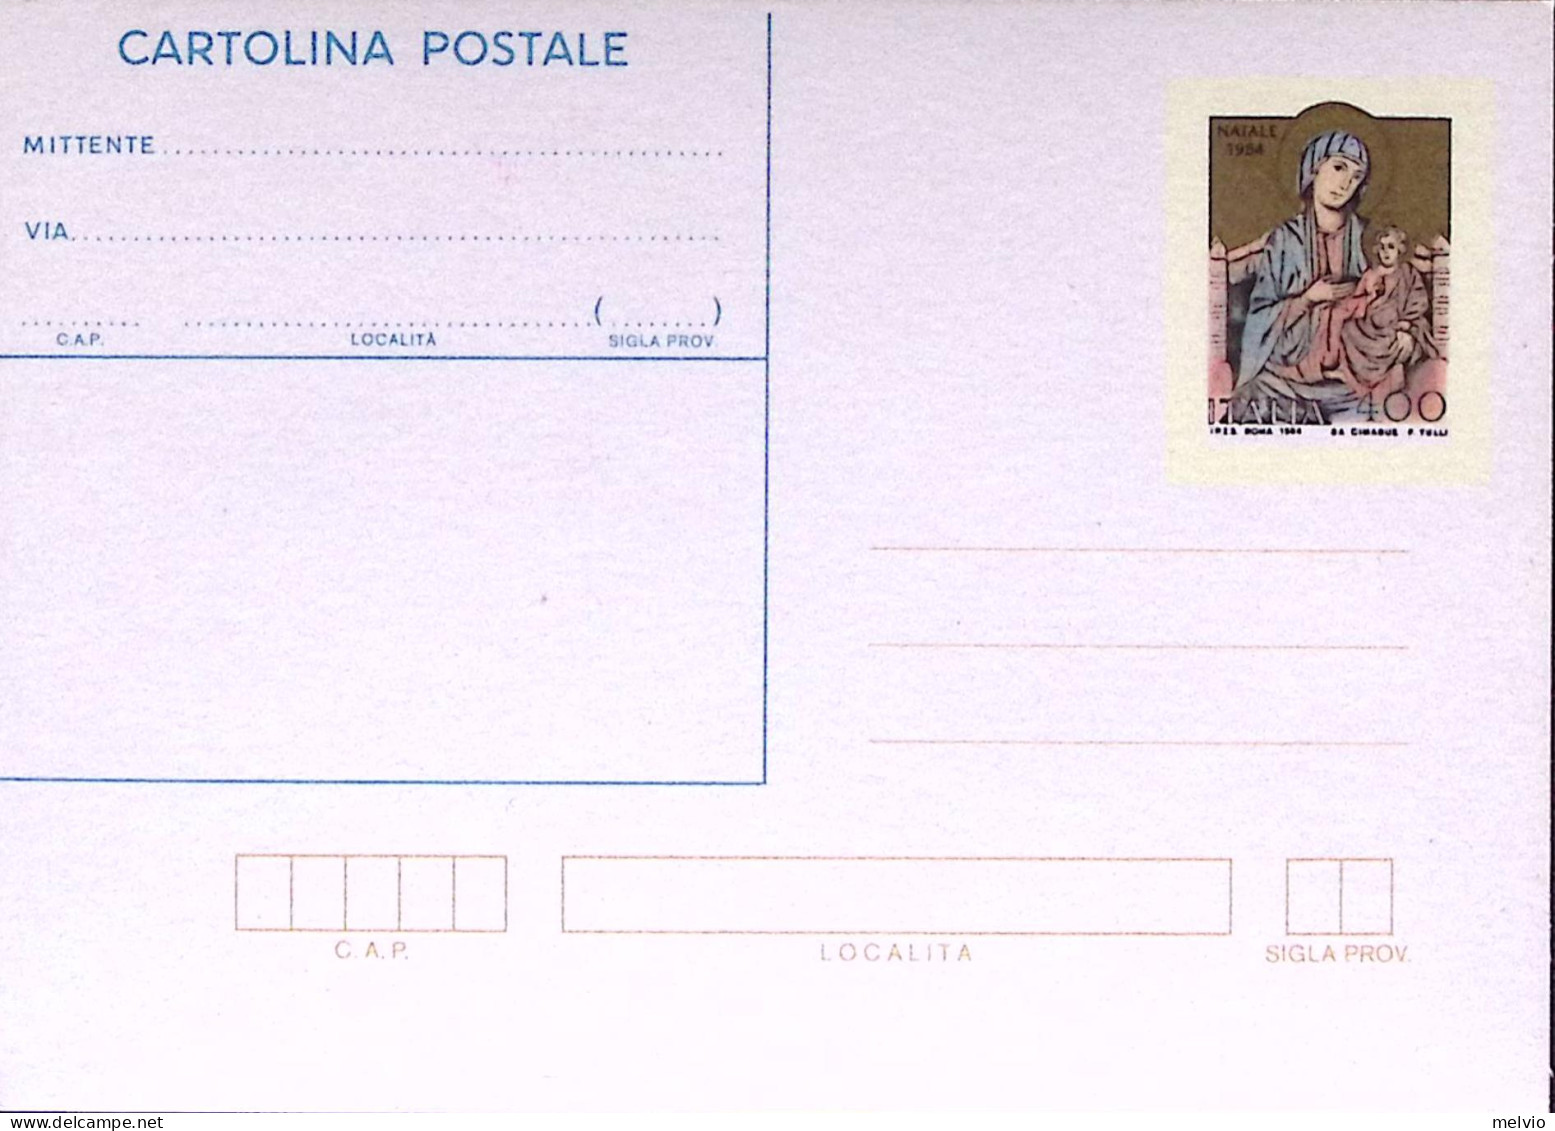 1984-Cartolina Postale Lire 400 Natale Madonna Di Cimabue Nuova - Stamped Stationery